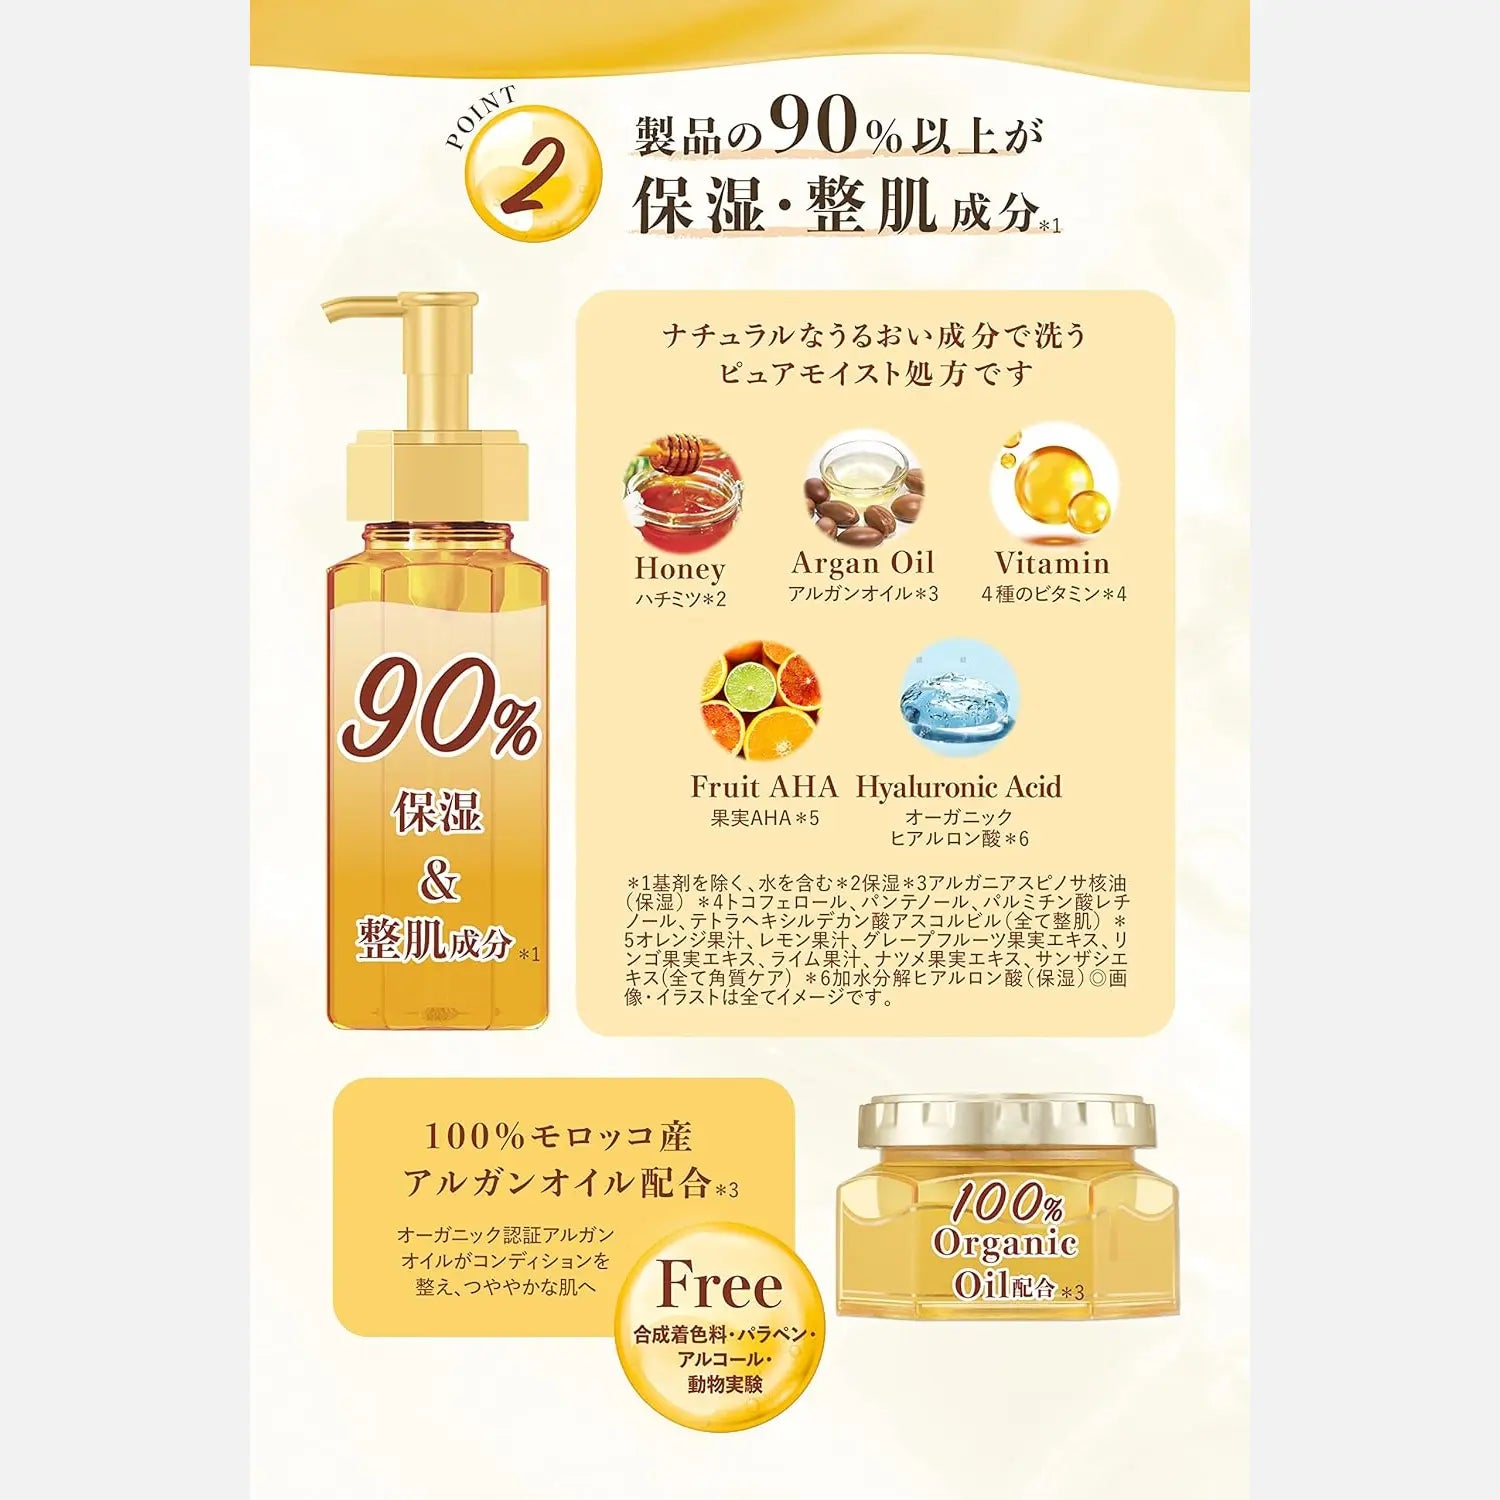 & Honey Cleansing Oil 180ml - Buy Me Japan